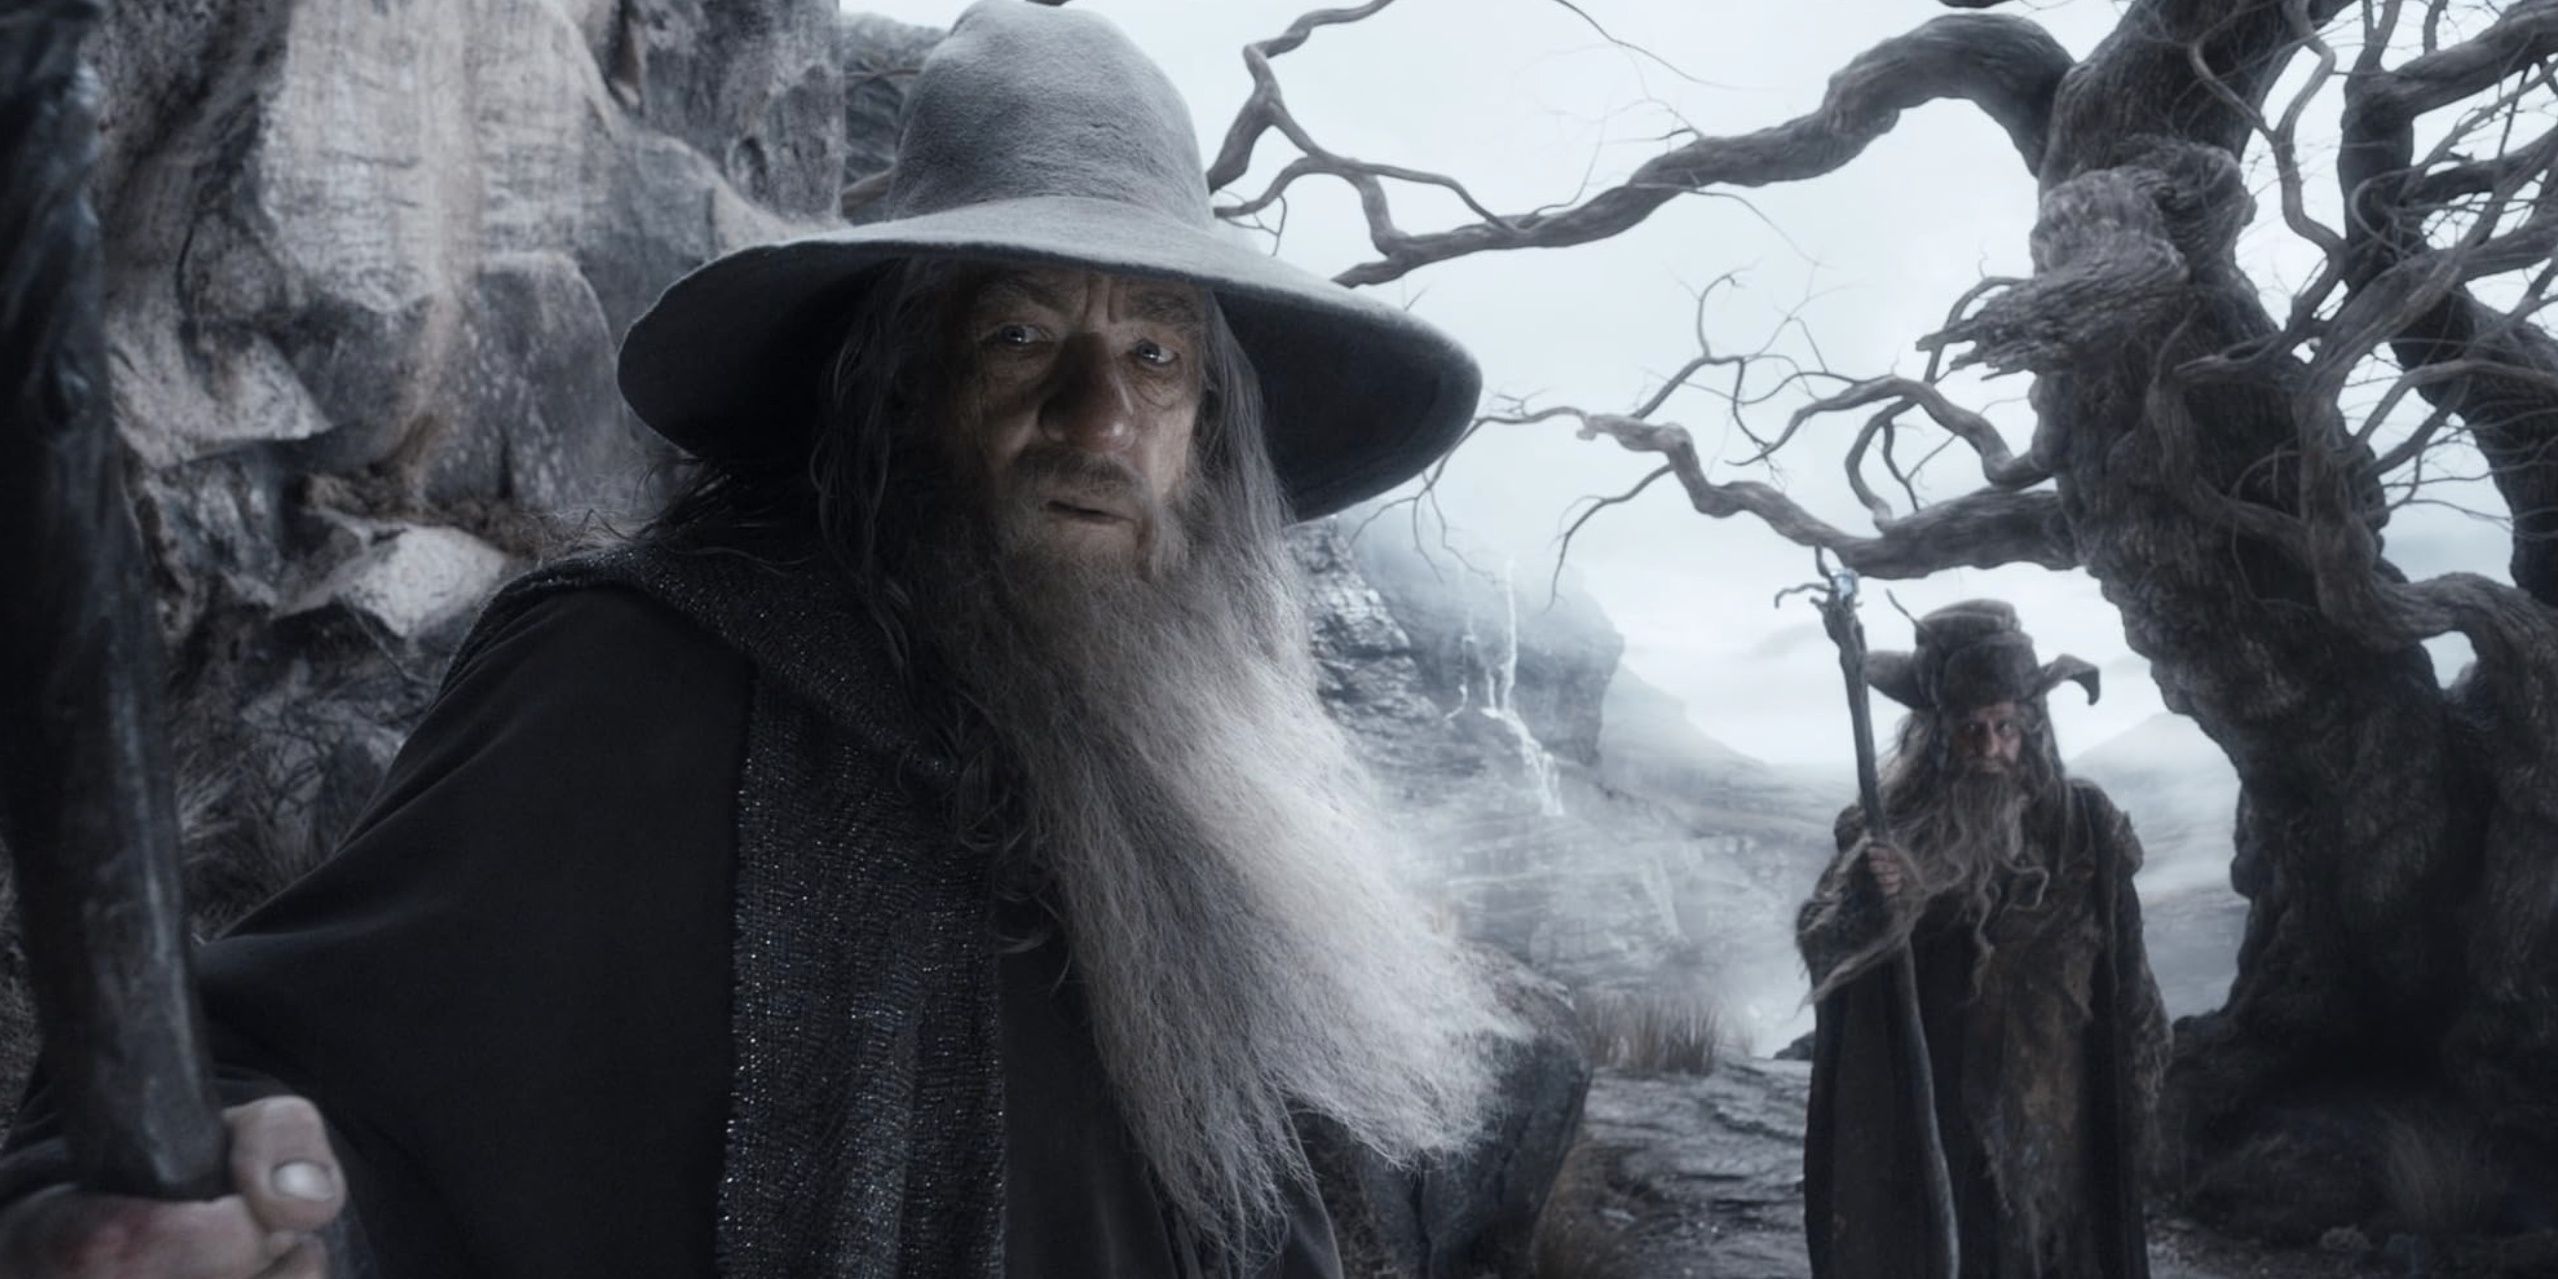 Gandalf and Radagast approach the ancient ruins of Dol Guldur